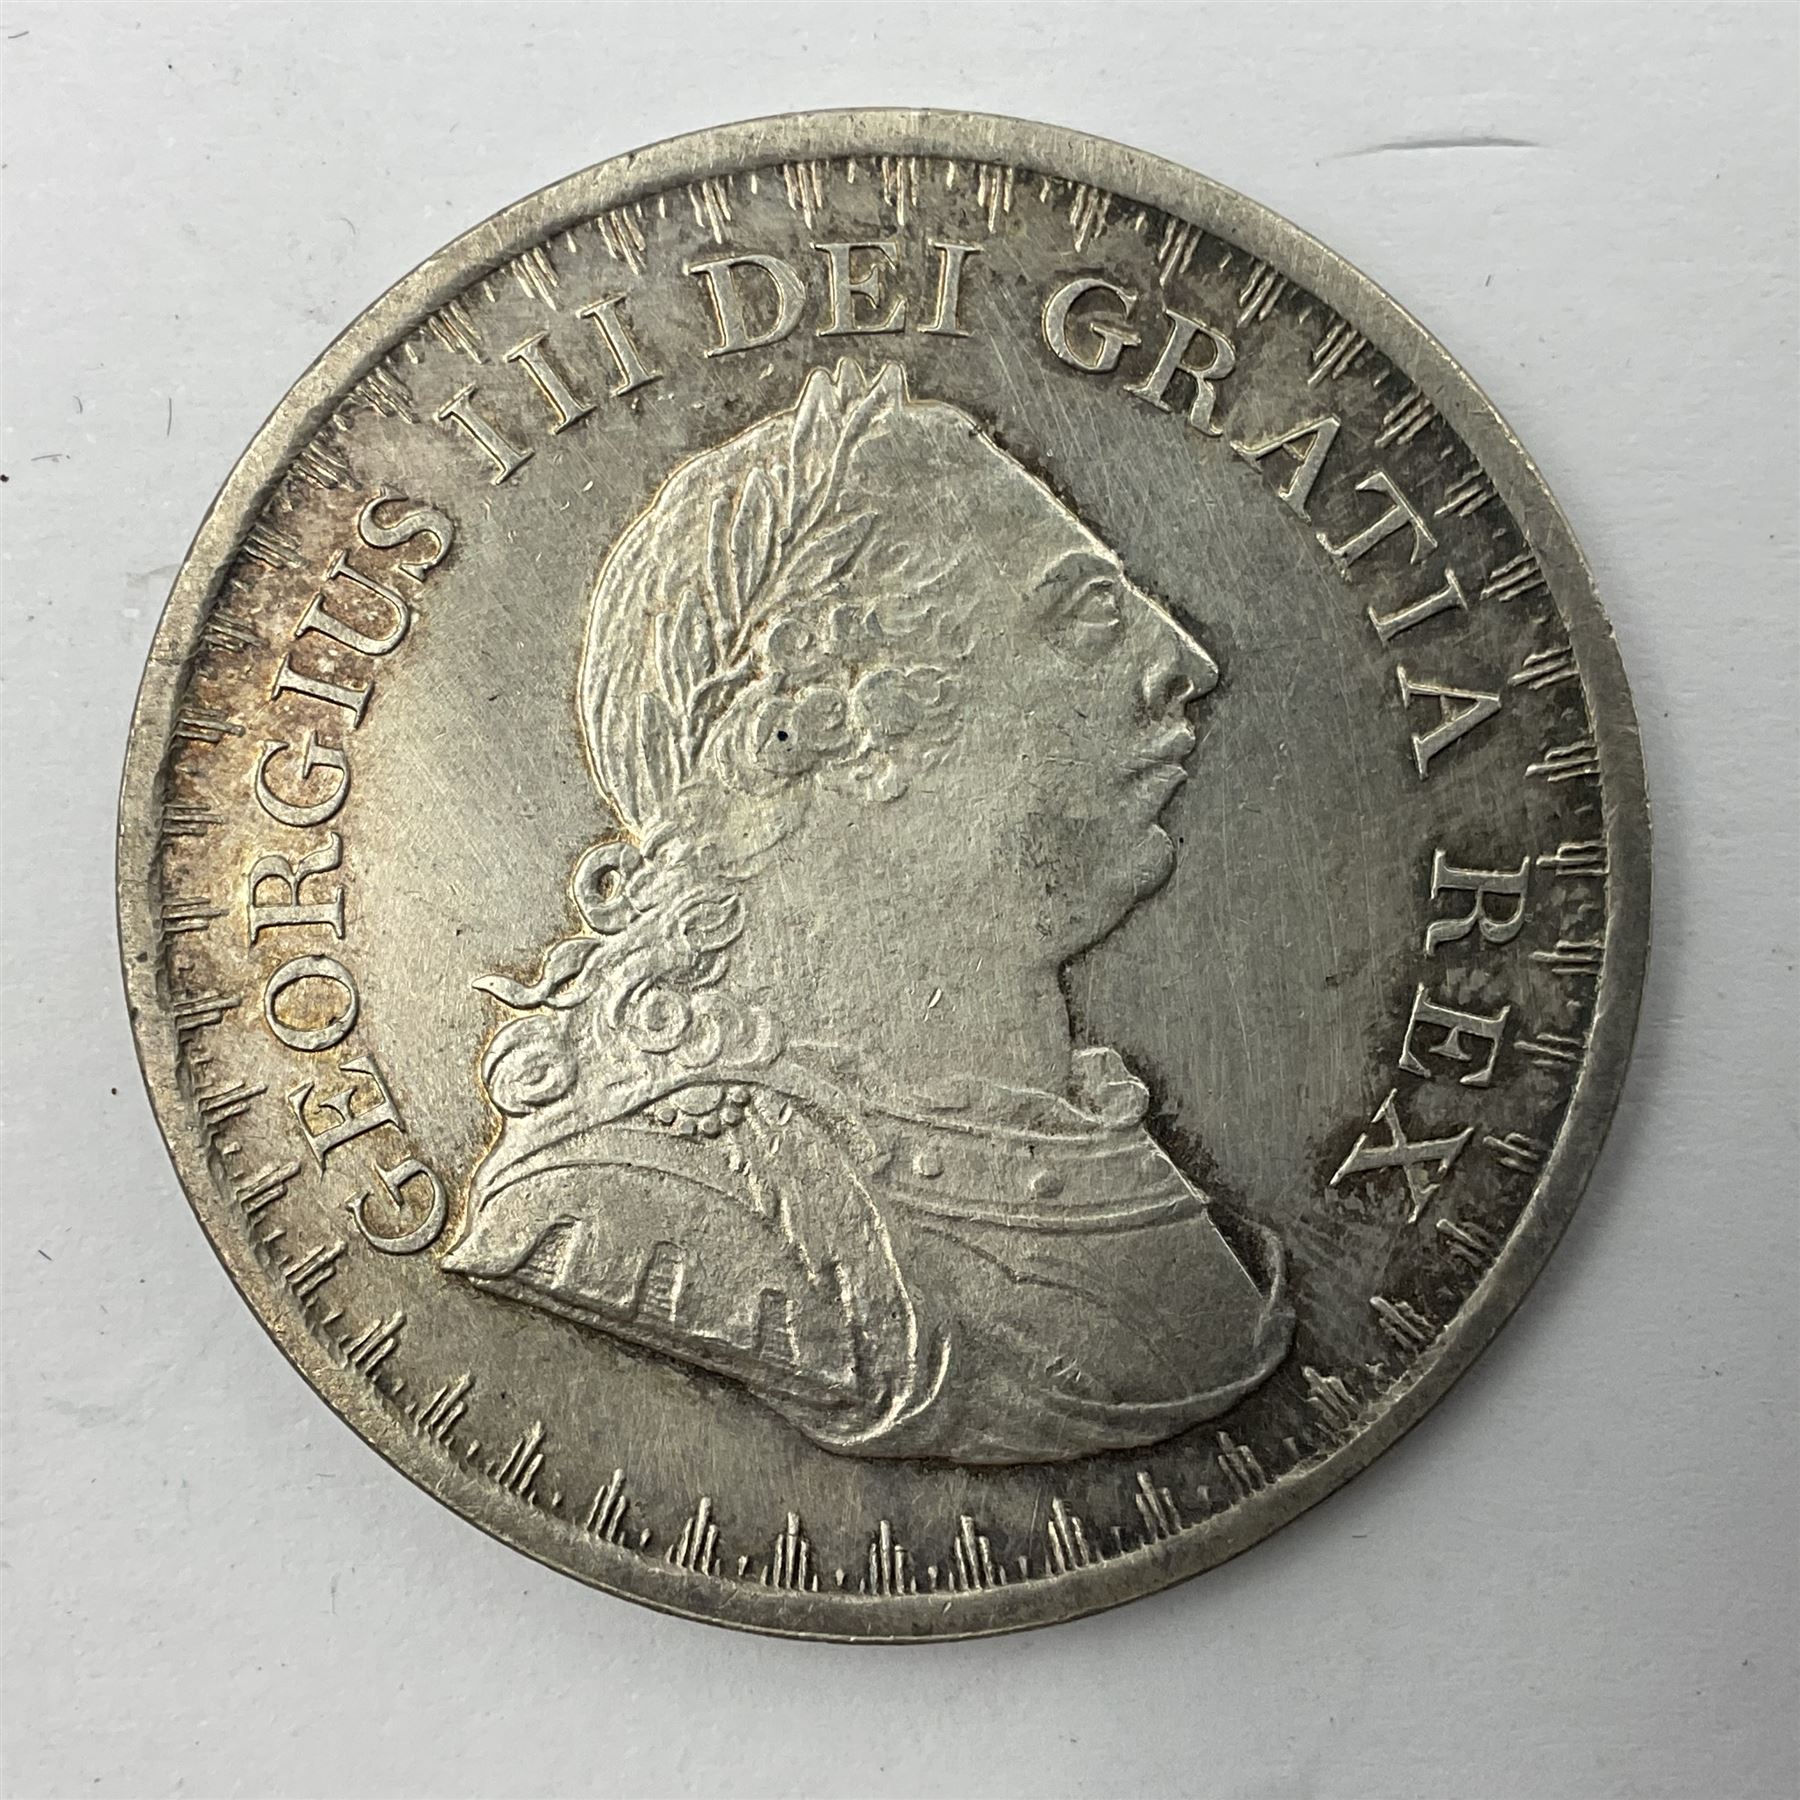 George III 1812 three shilling bank token - Image 4 of 4